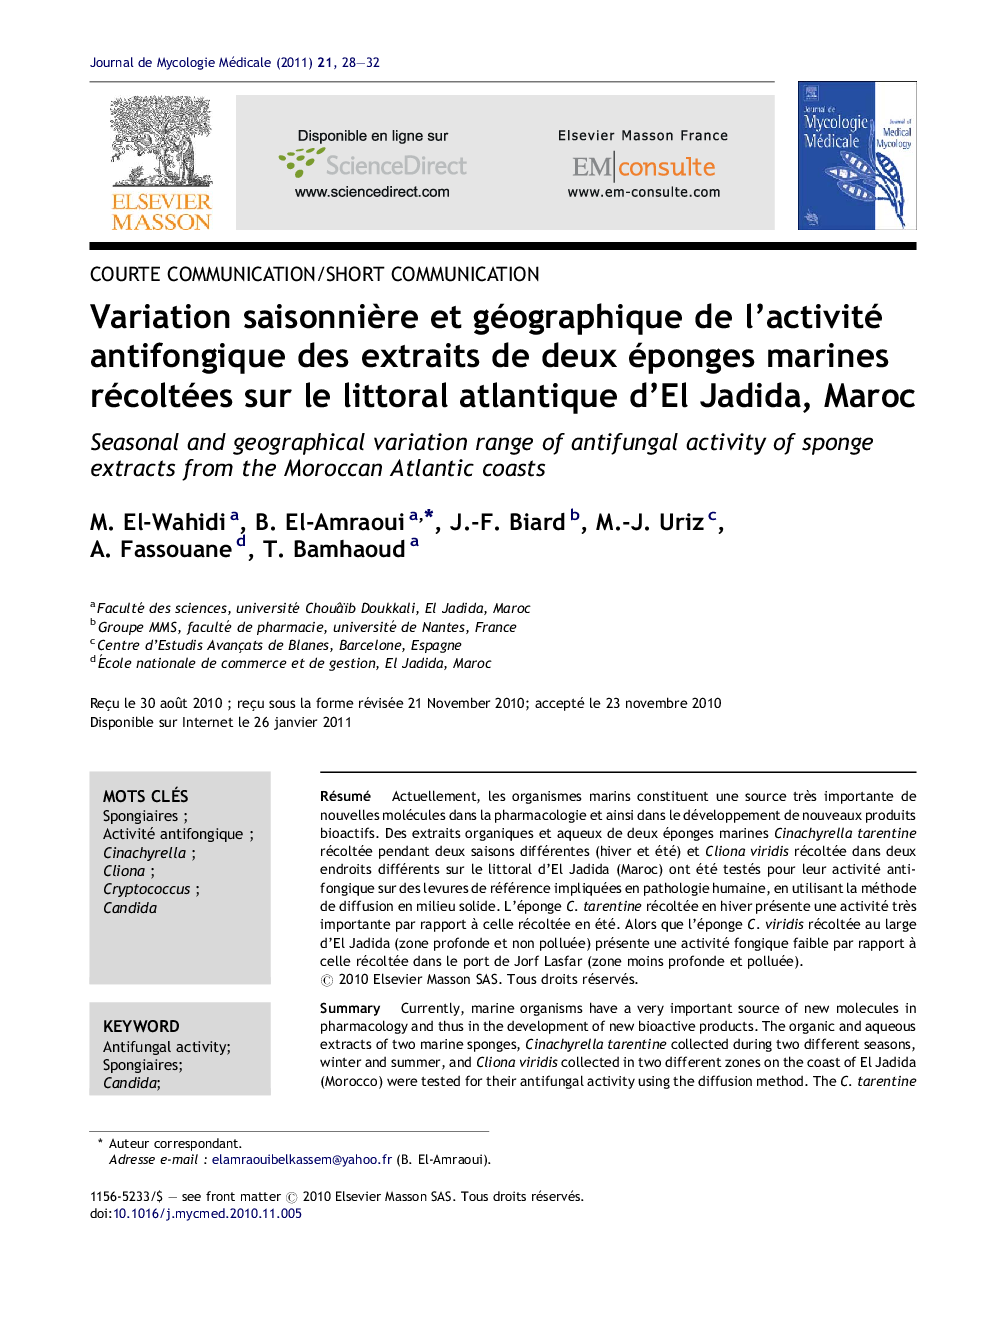 Variation saisonniÃ¨re et géographique de l'activité antifongique des extraits de deux éponges marines récoltées sur le littoral atlantique d'El Jadida, Maroc